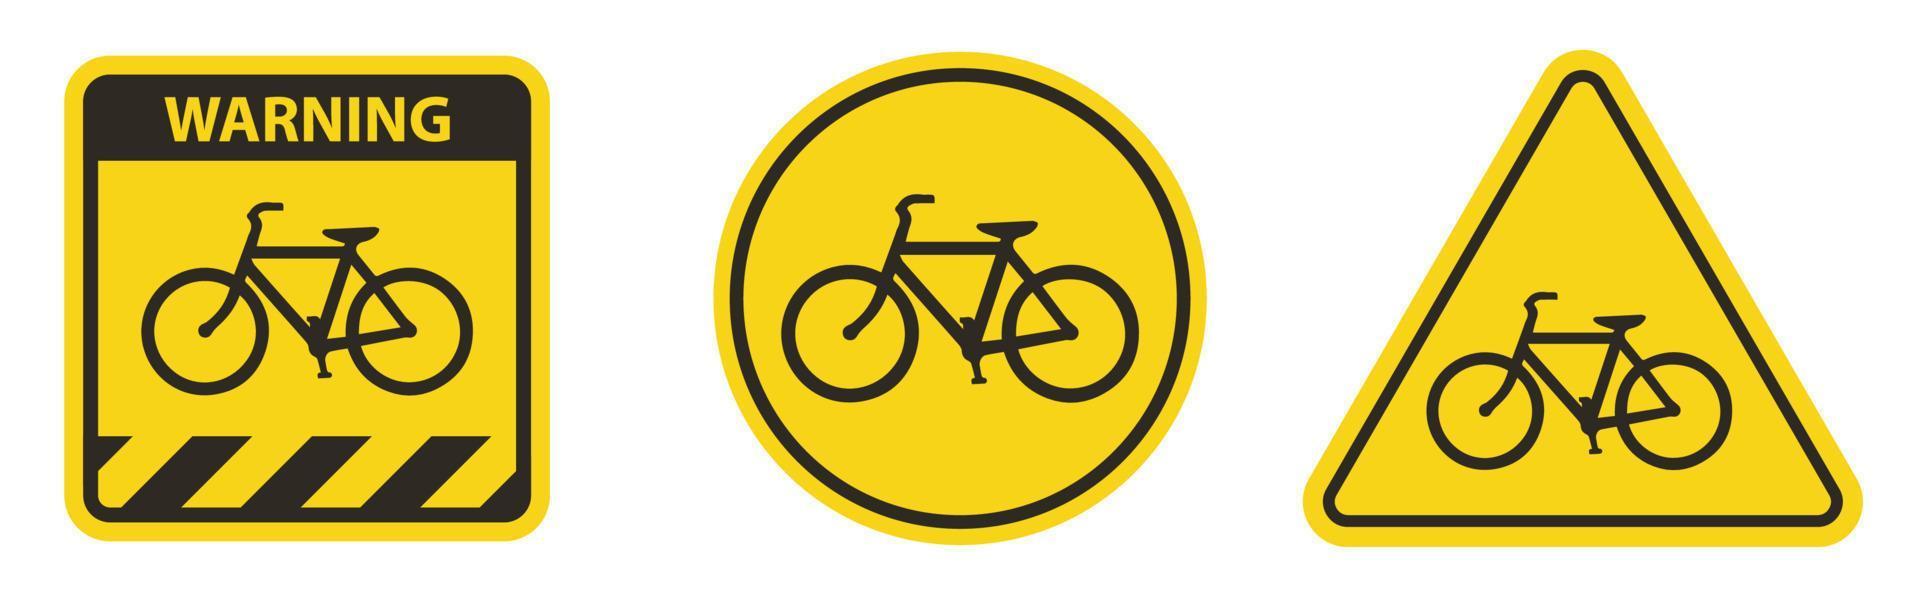 cykeltrafik varningsskylt isolerad på vit bakgrund. vektor illustration